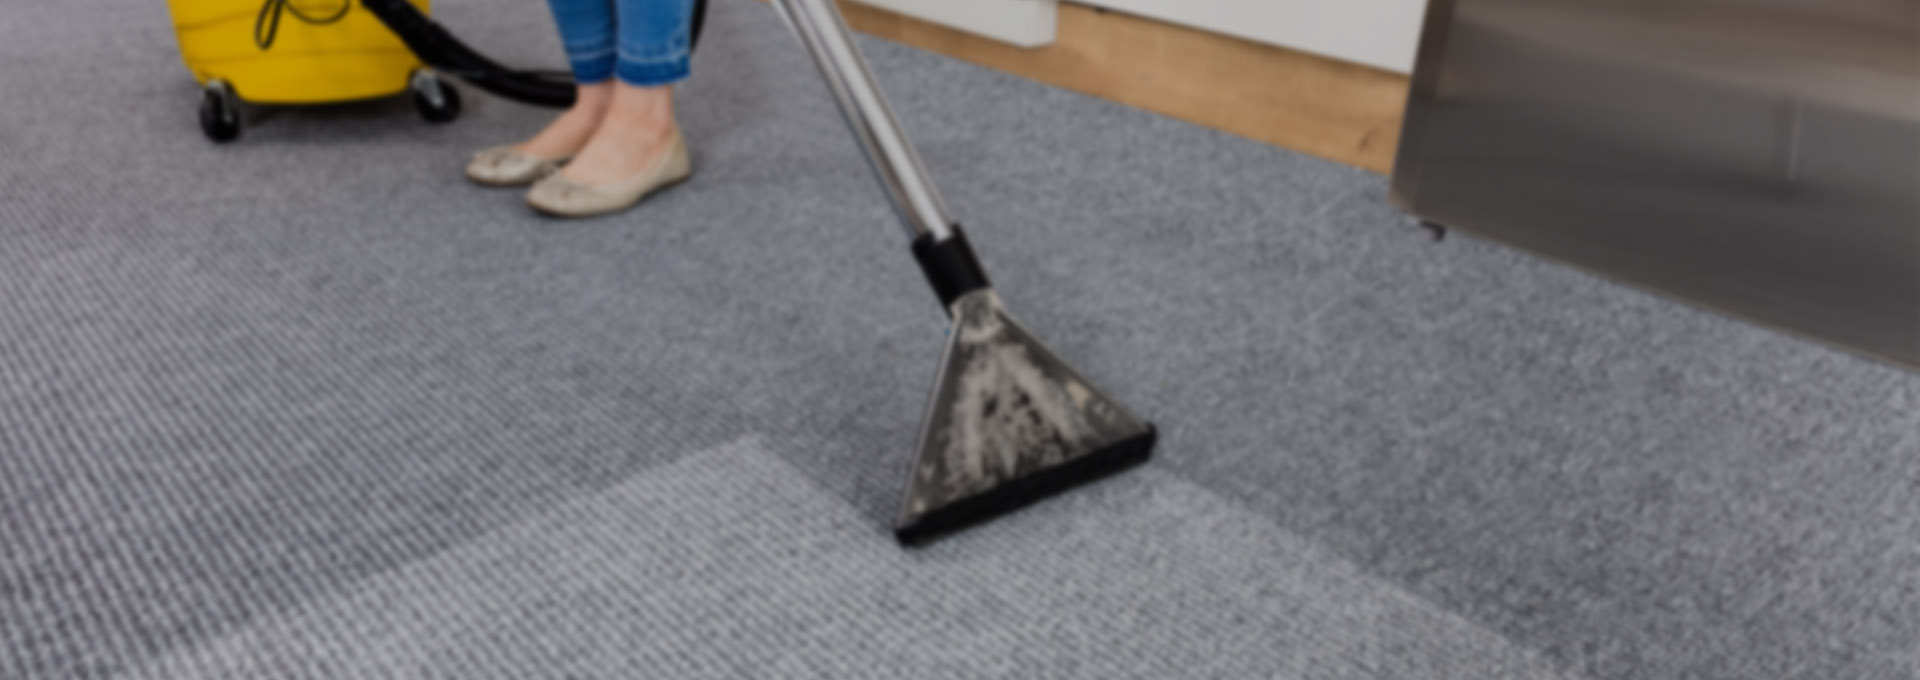 , How to steam clean a carpet?